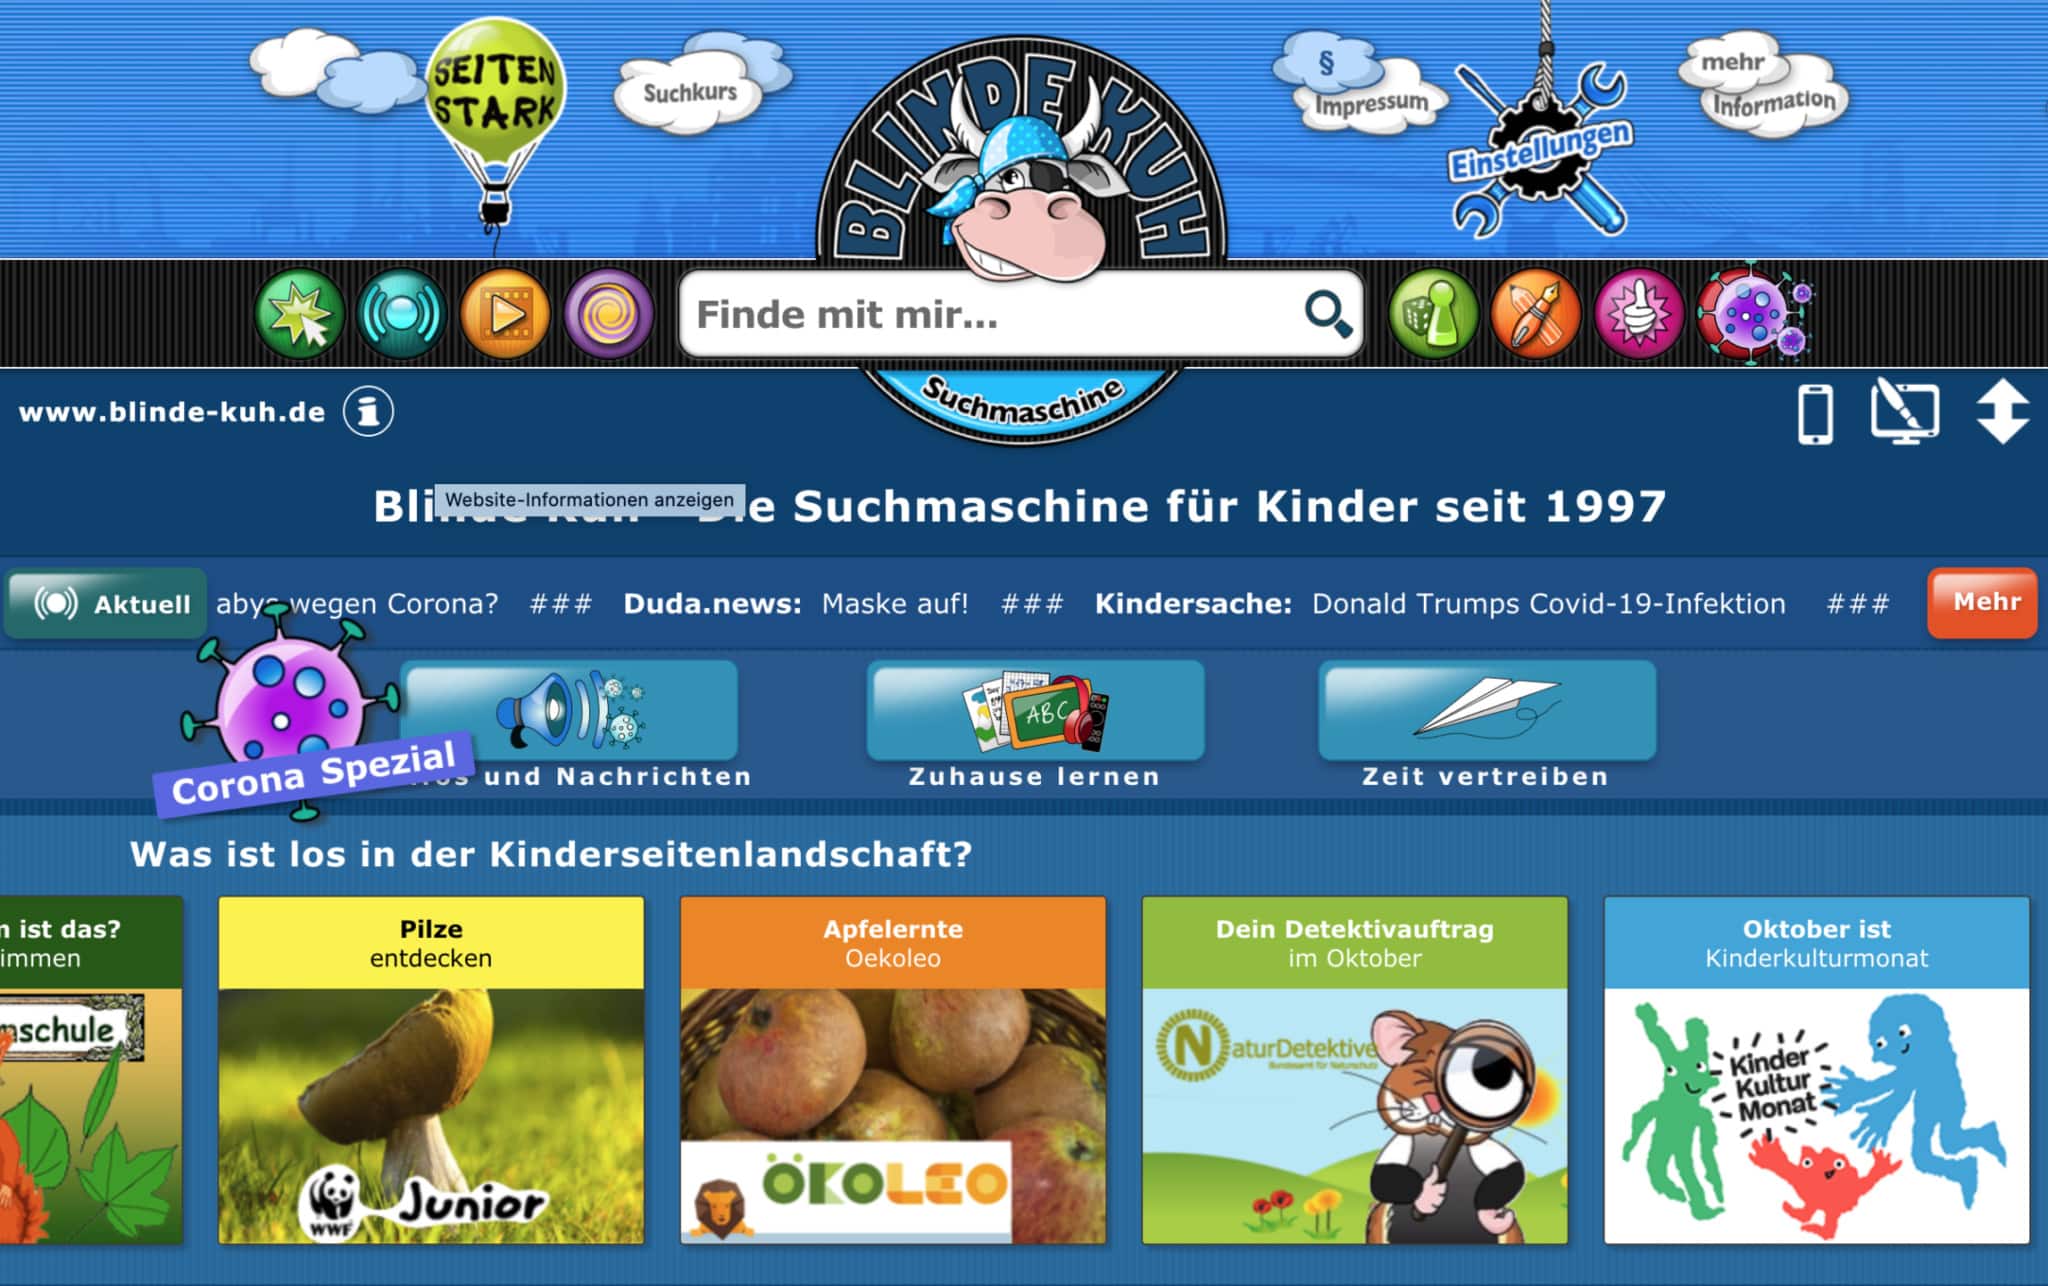 blinde-kuh.de: die älteste Suchmaschine für Kinder